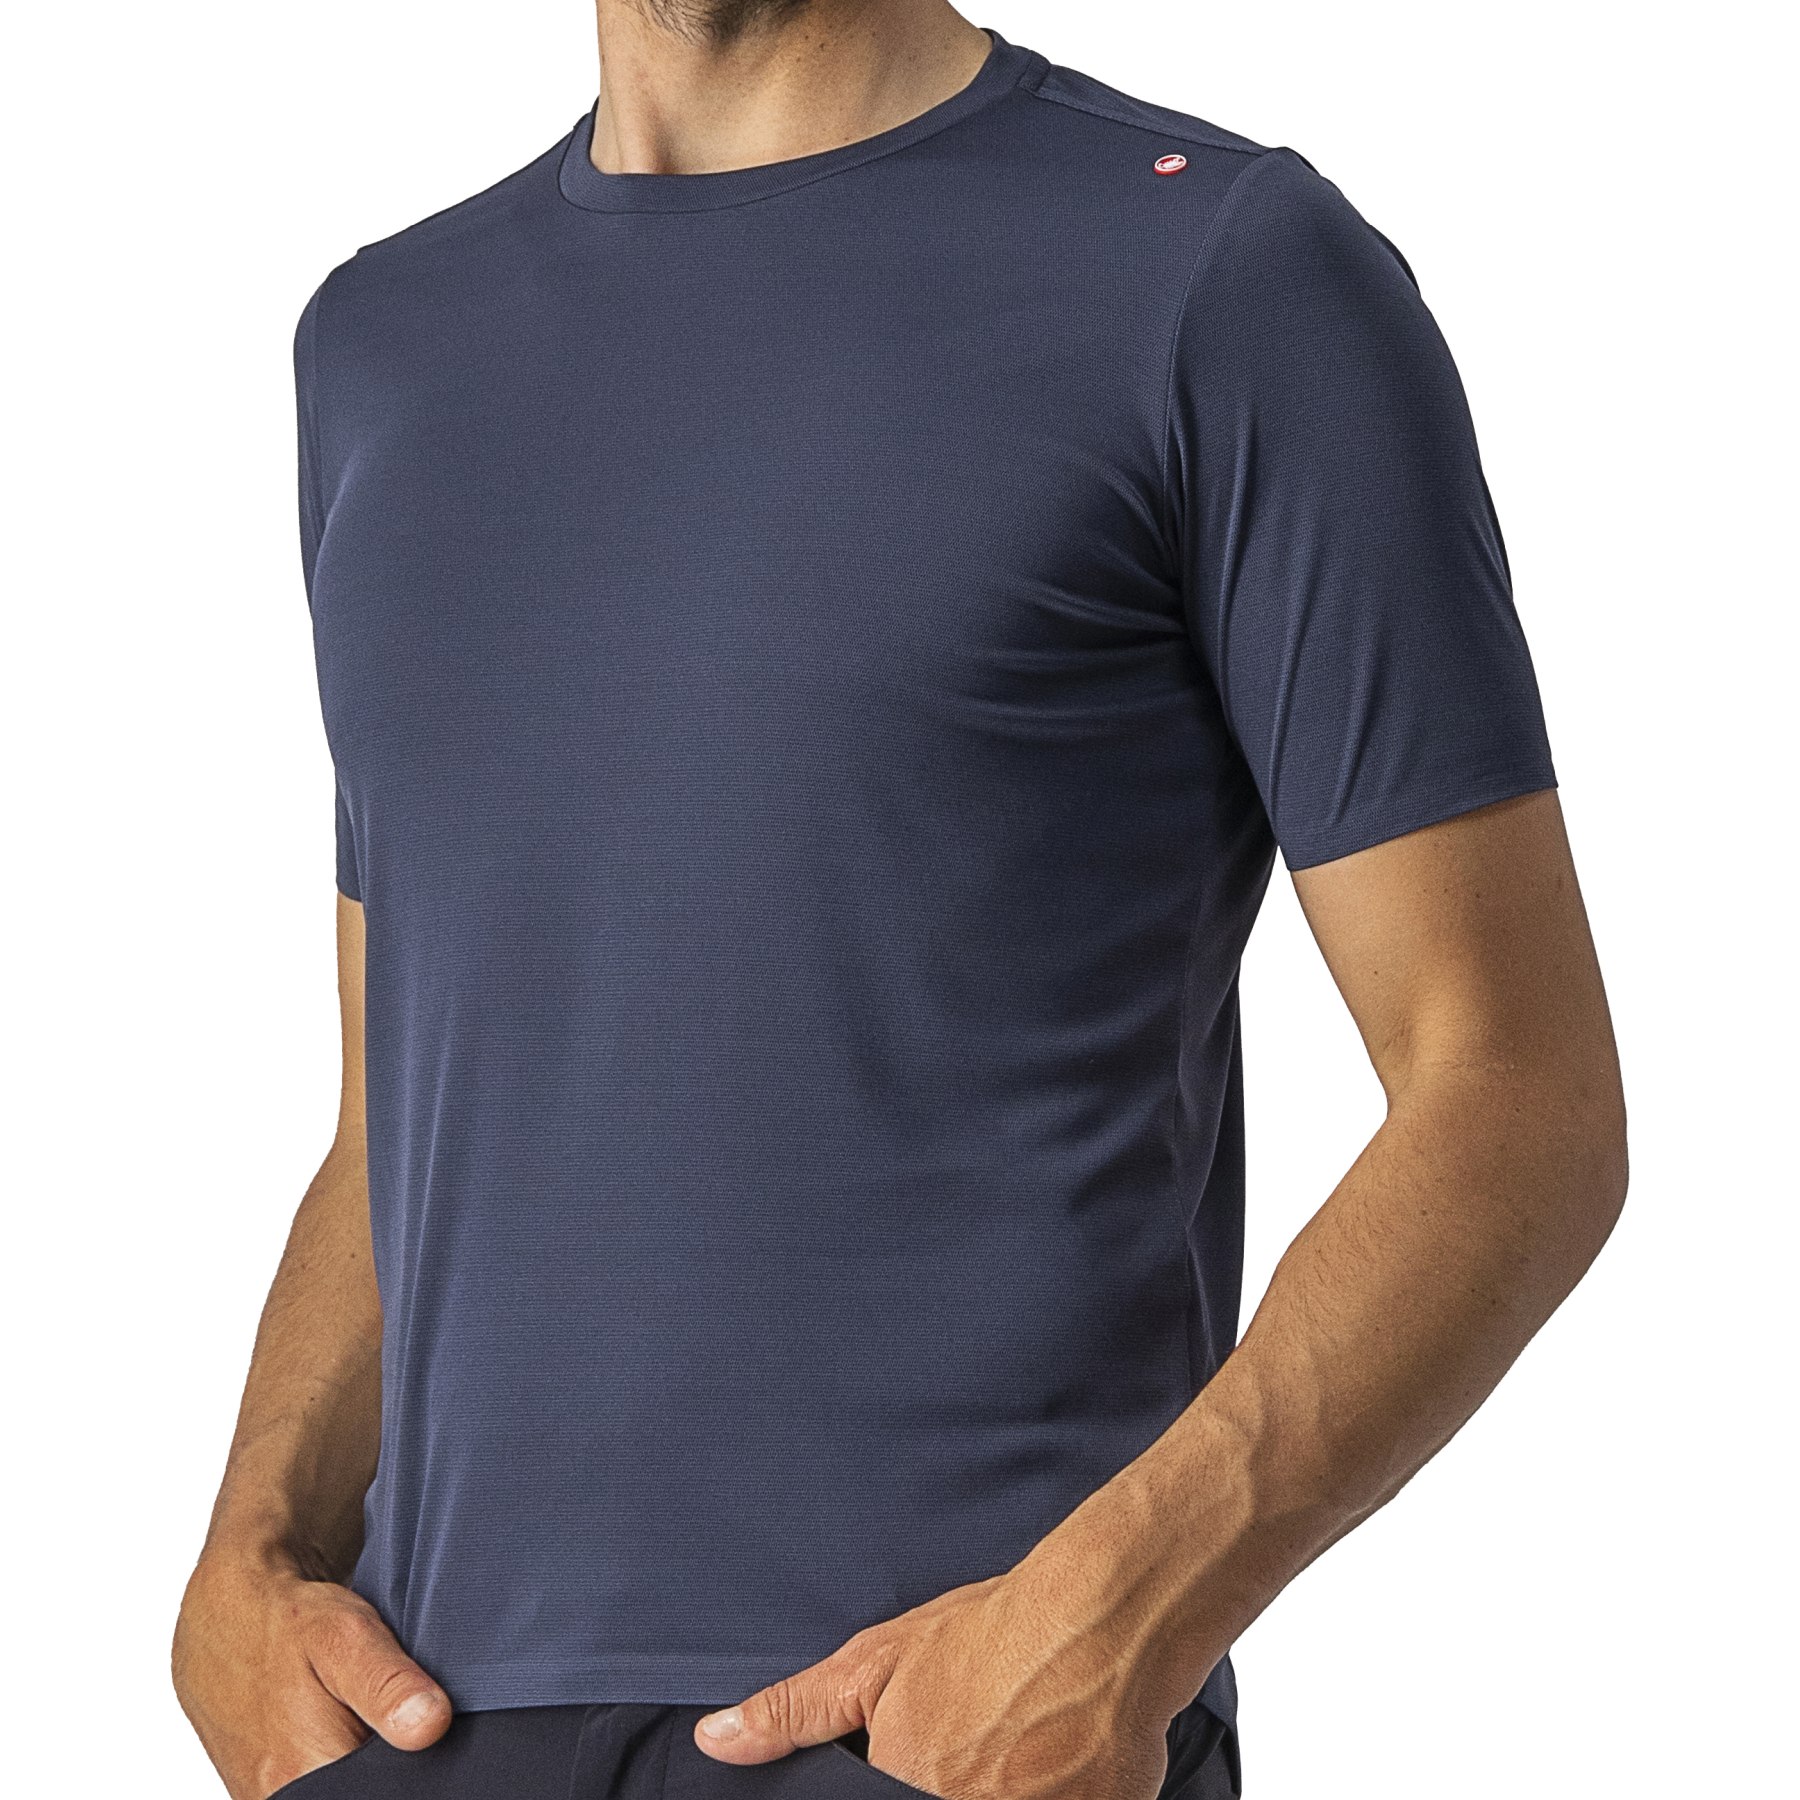 Produktbild von Castelli Tech 2 T-Shirt - savile blue 414